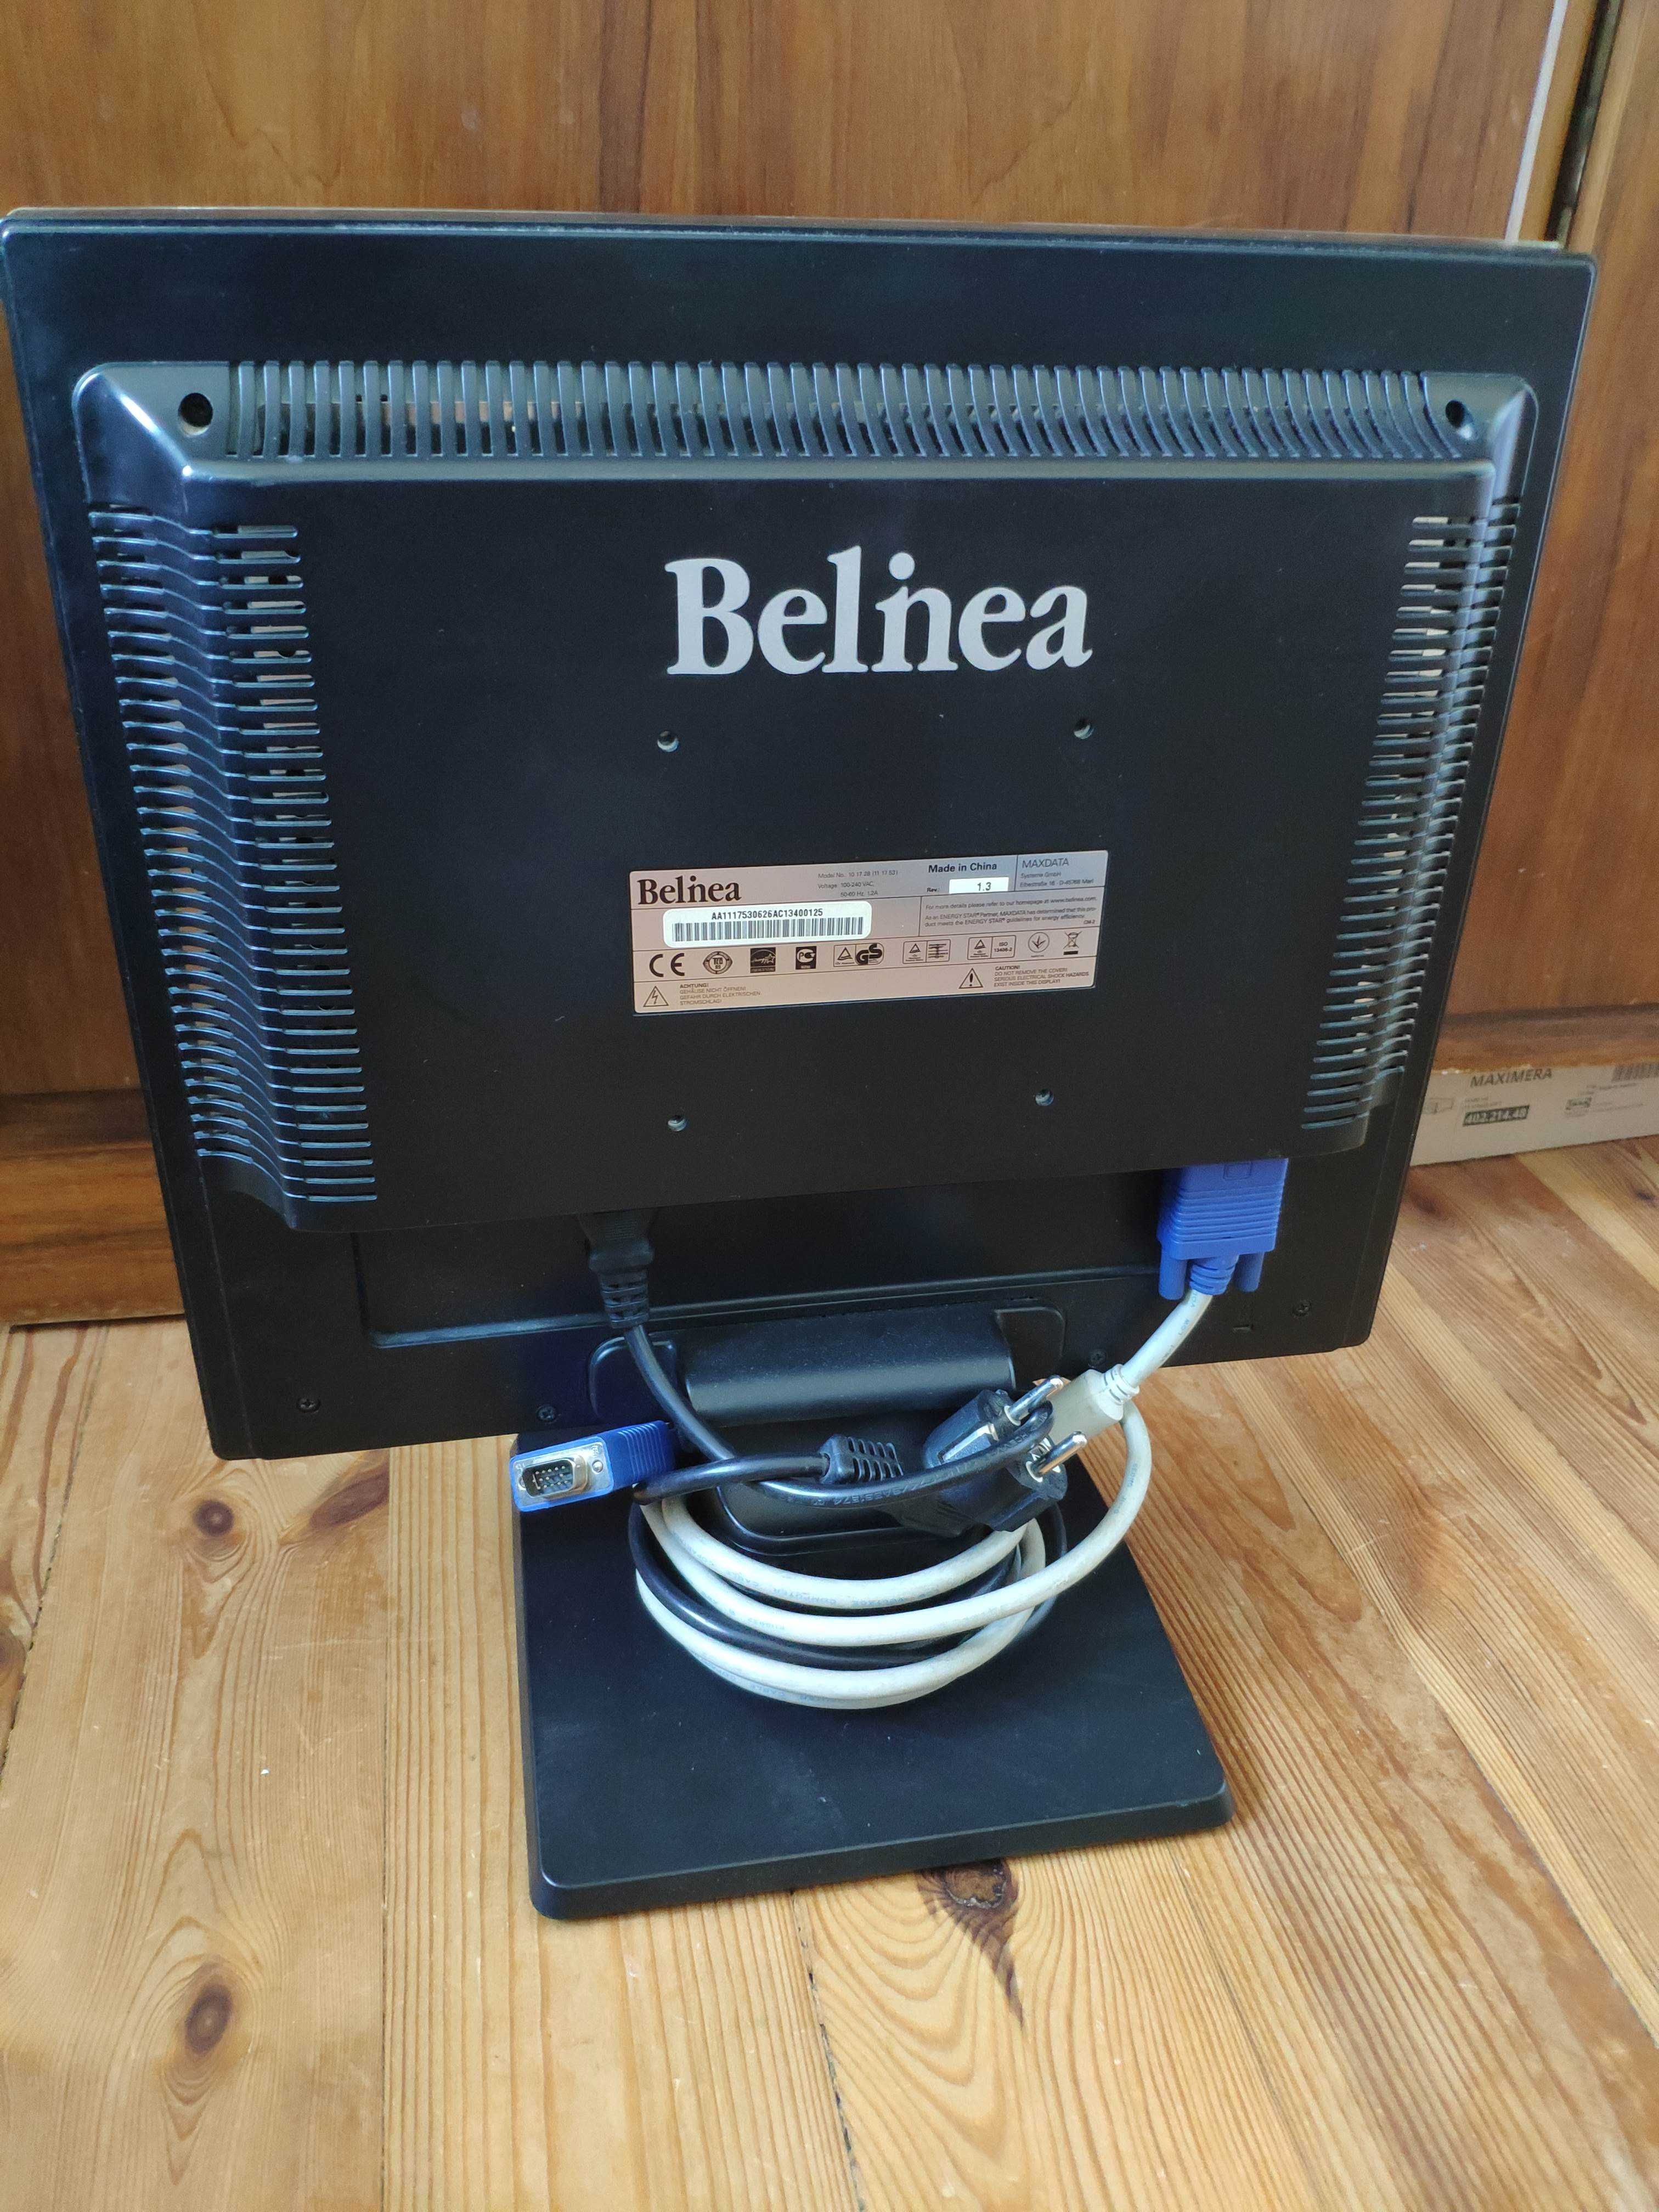 Monitor LCD Belinea 17" Warszawa Ursynów VGA DVI głośniki